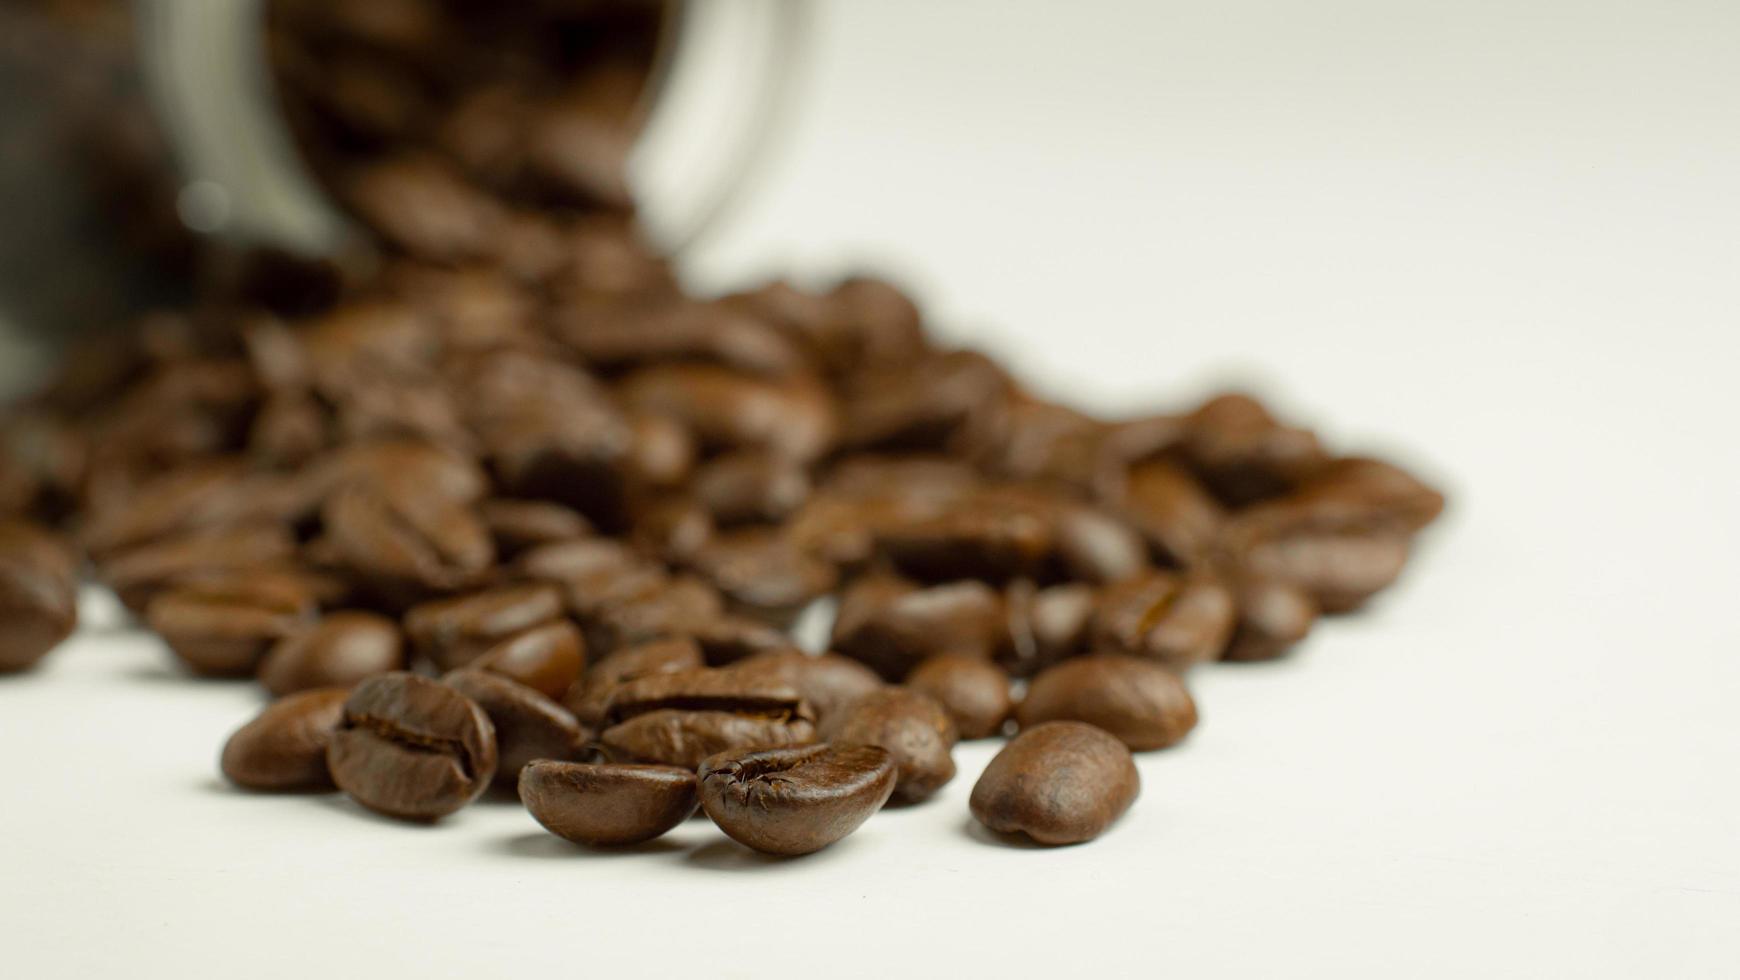 Geröstete Kaffeebohnen bereiten sich darauf vor, dass der Mahlgrad aus einer Glasflasche gegossen wird, die auf einem weißen Hintergrund liegt, um frischen Kaffee zuzubereiten oder in eine Espressomaschine oder Moka-Kanne zu gehen foto